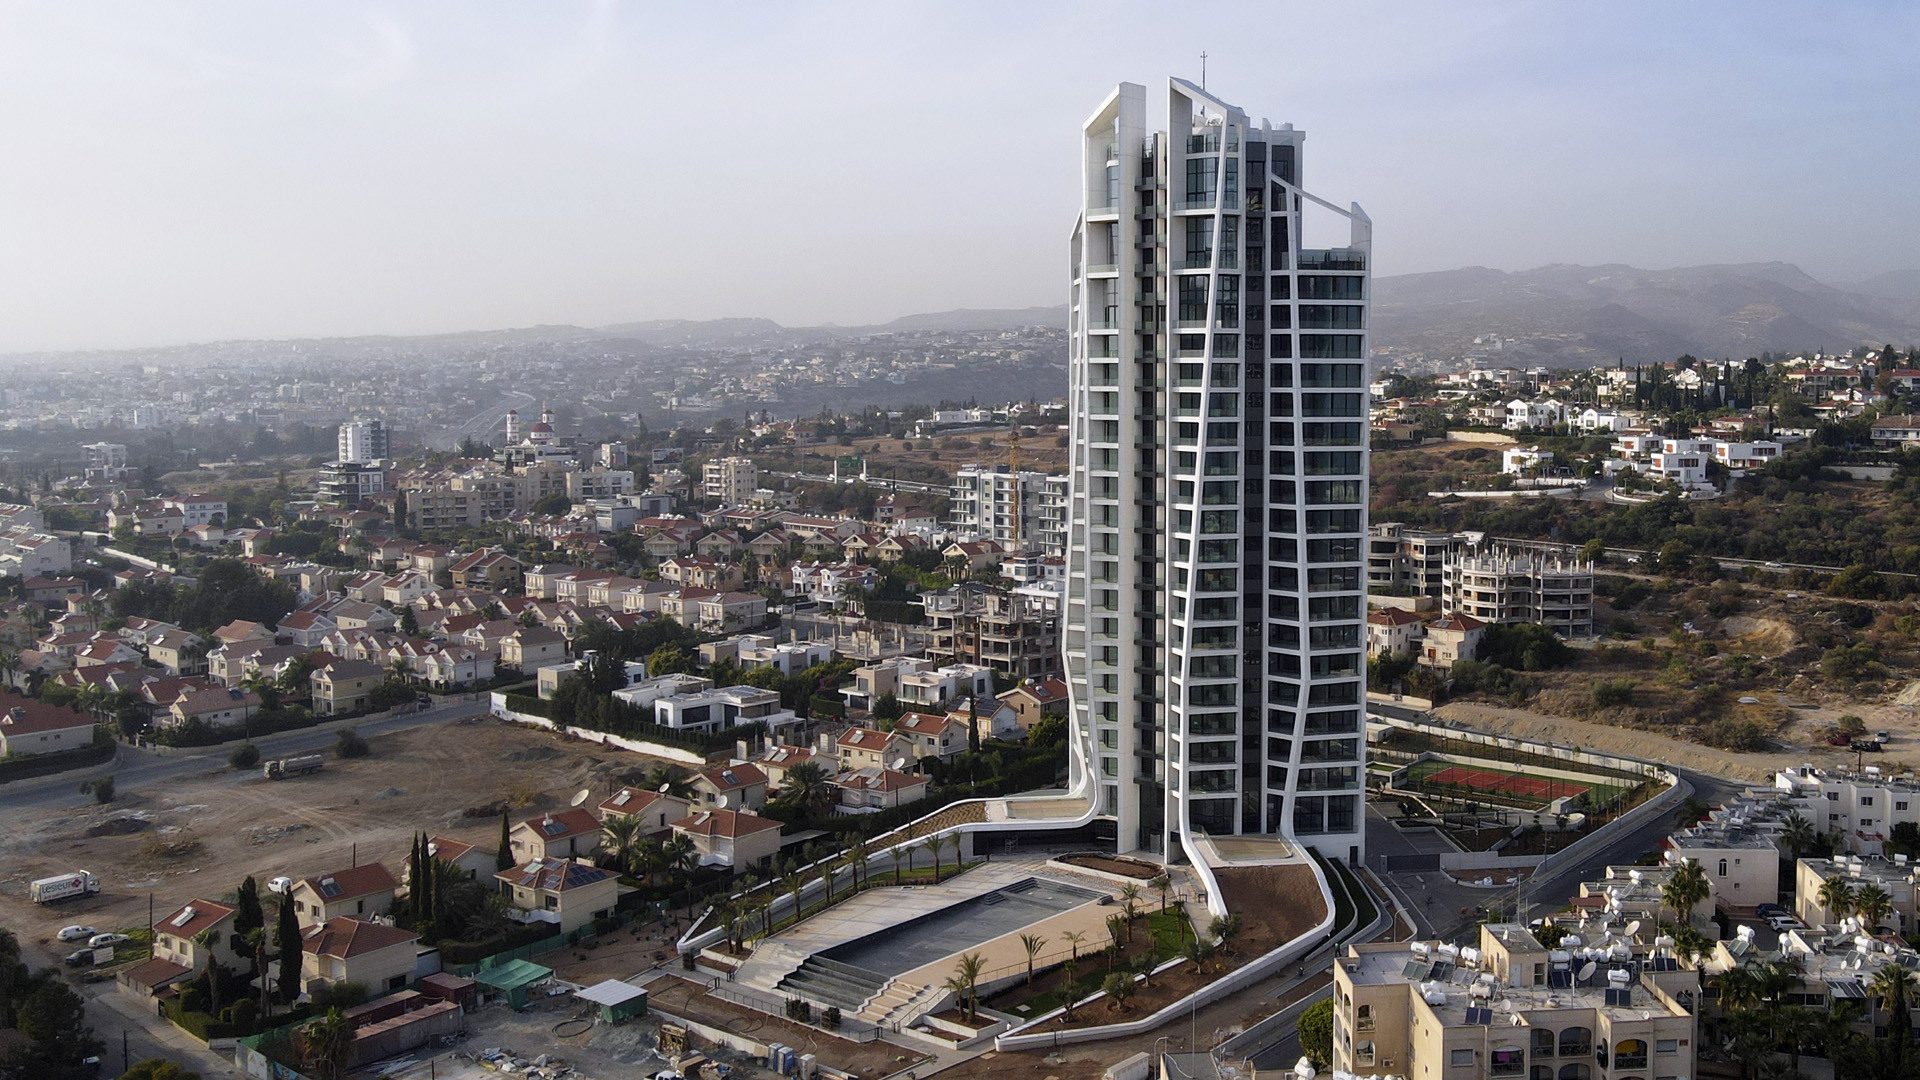 UHA Skytower Limassol Cyprus BBF luxury highrise 2021 Graphisoft Awards